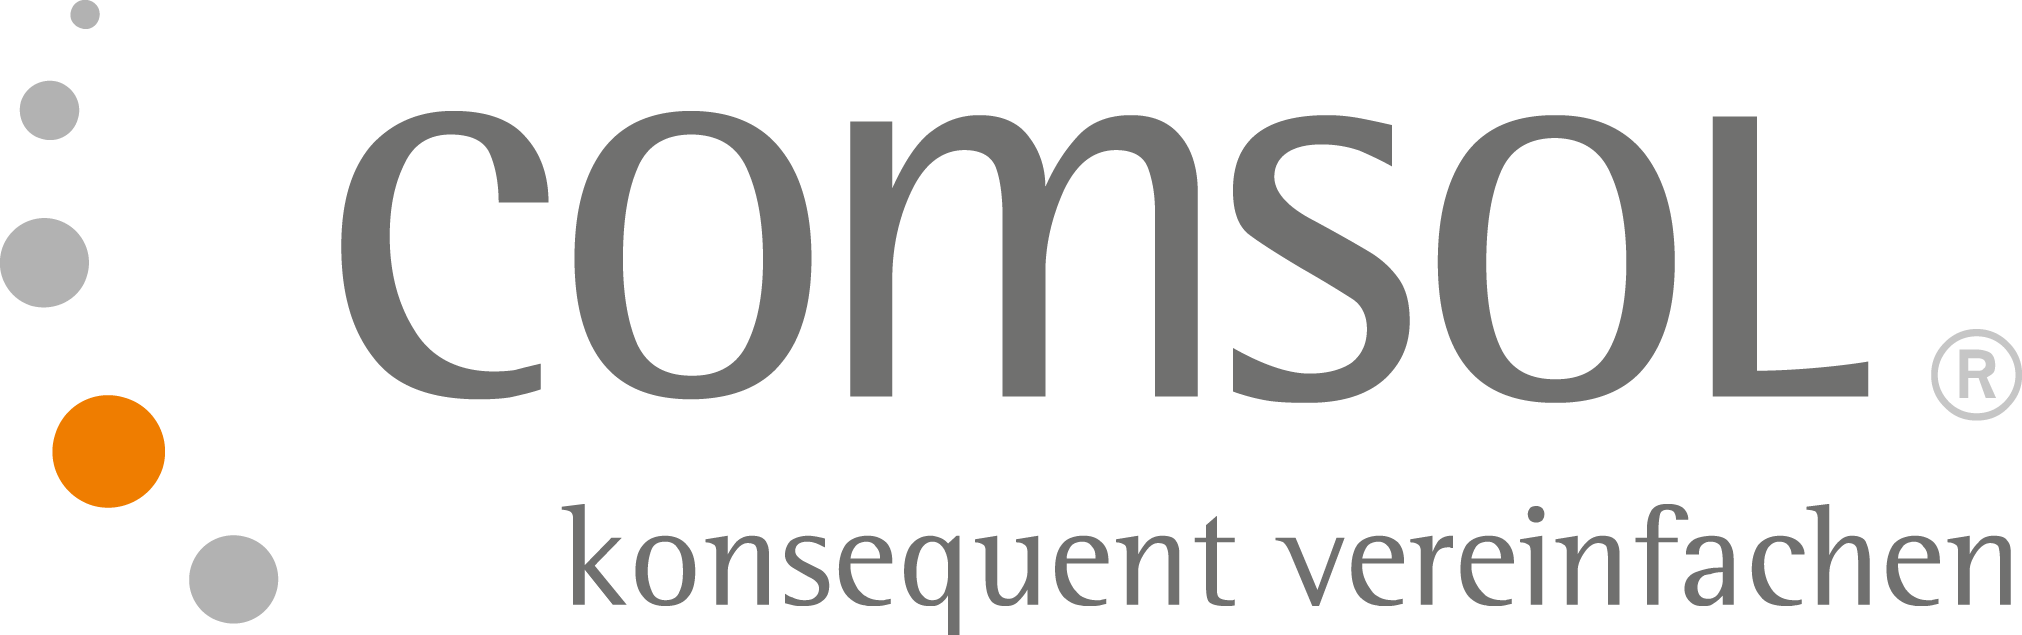 Logo der Comsol AG, einer unserer Partner